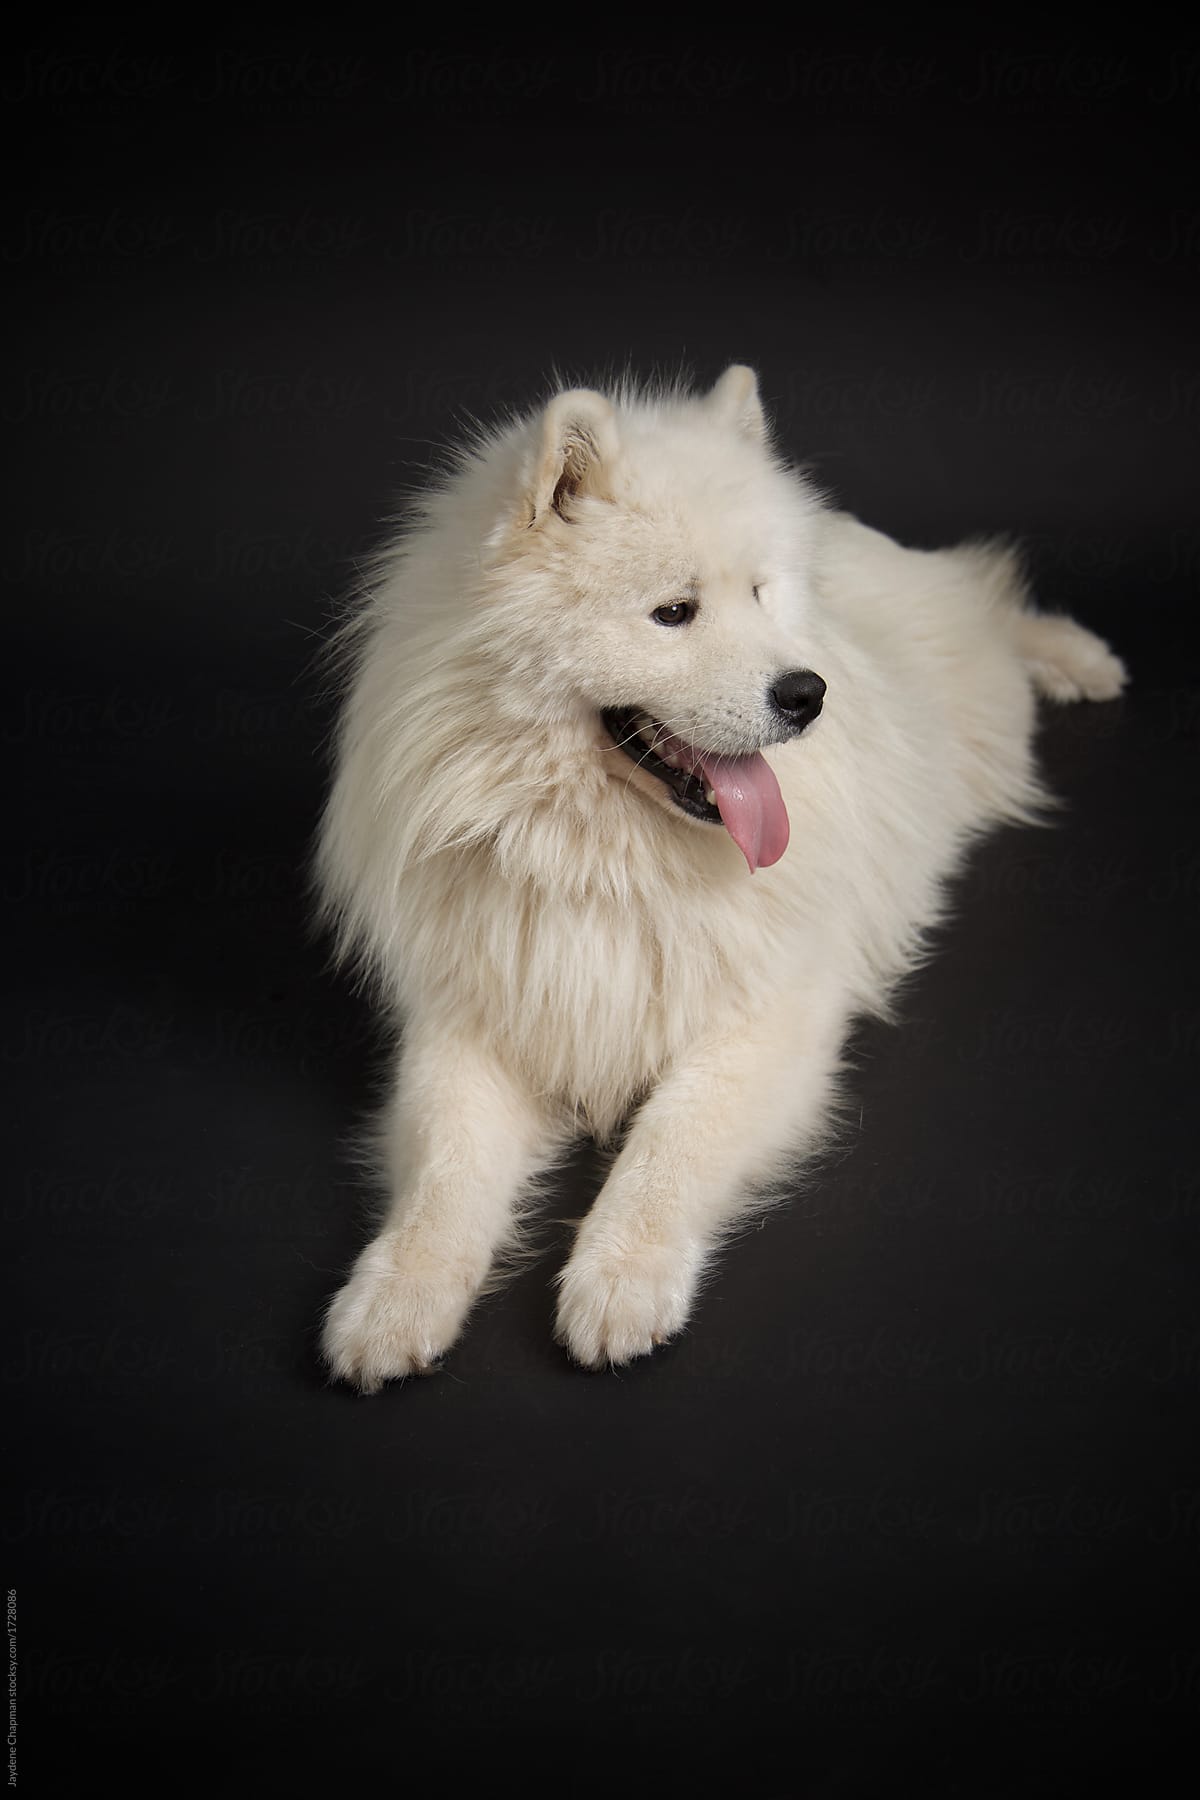 white large fluffy dog